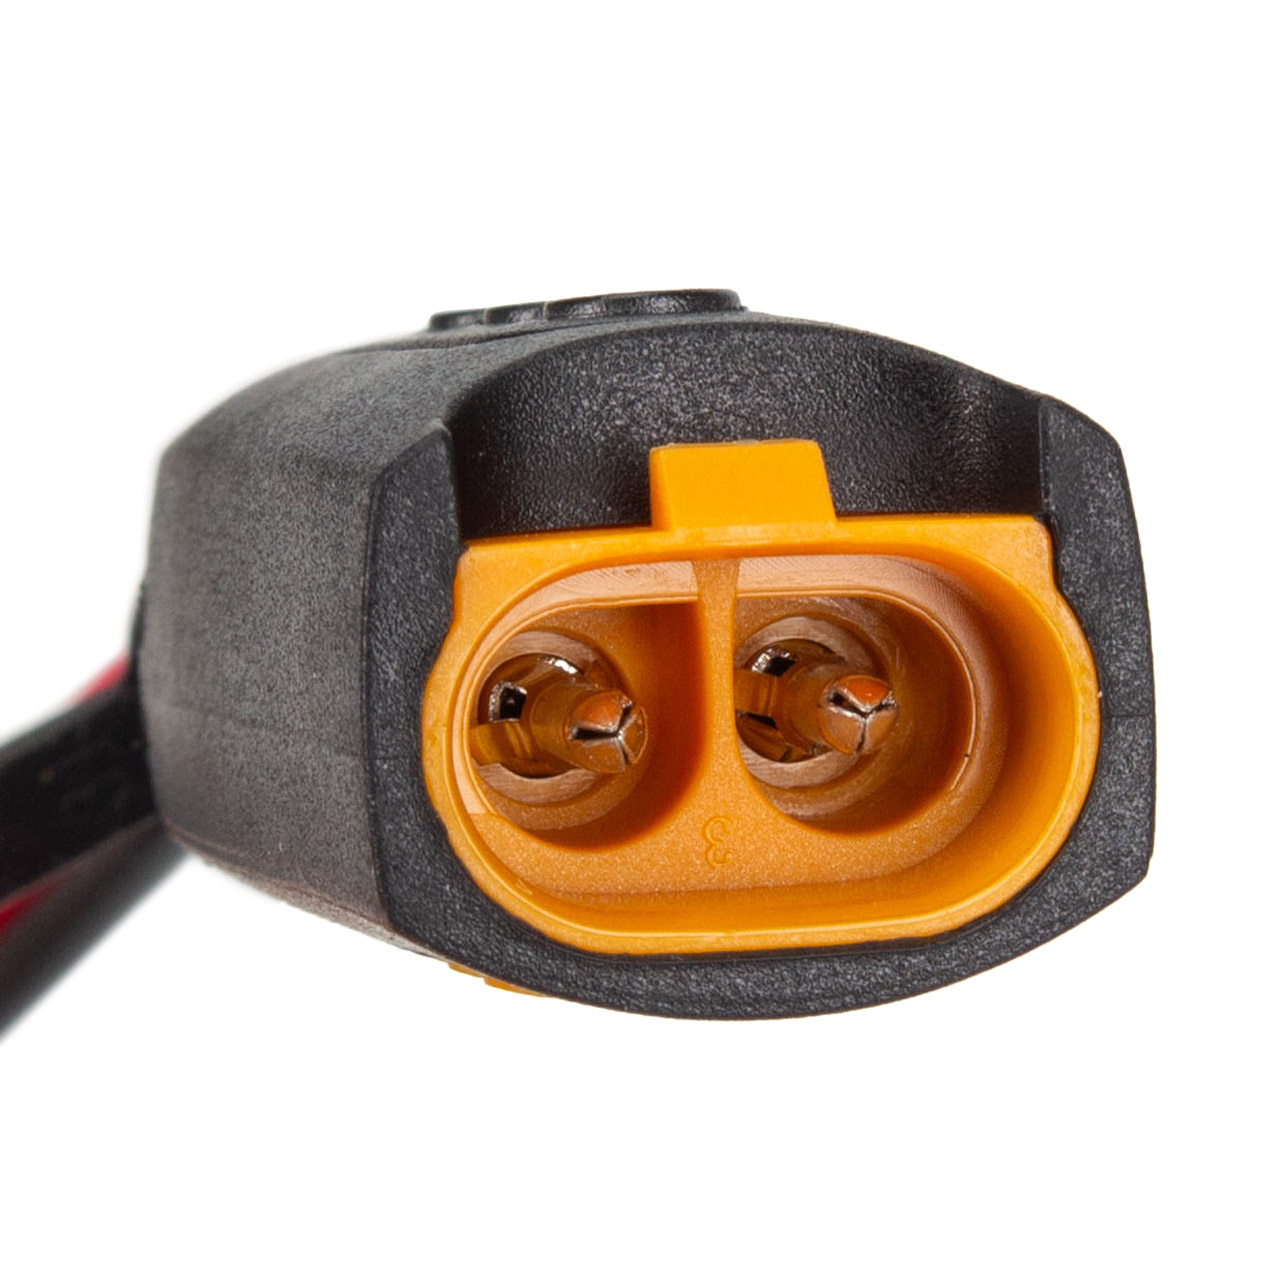 CTEK 56-870 Comfort Indicator Cig Plug Ladezustandsanzeige Ladekabel Ladeampel Prüfgerät